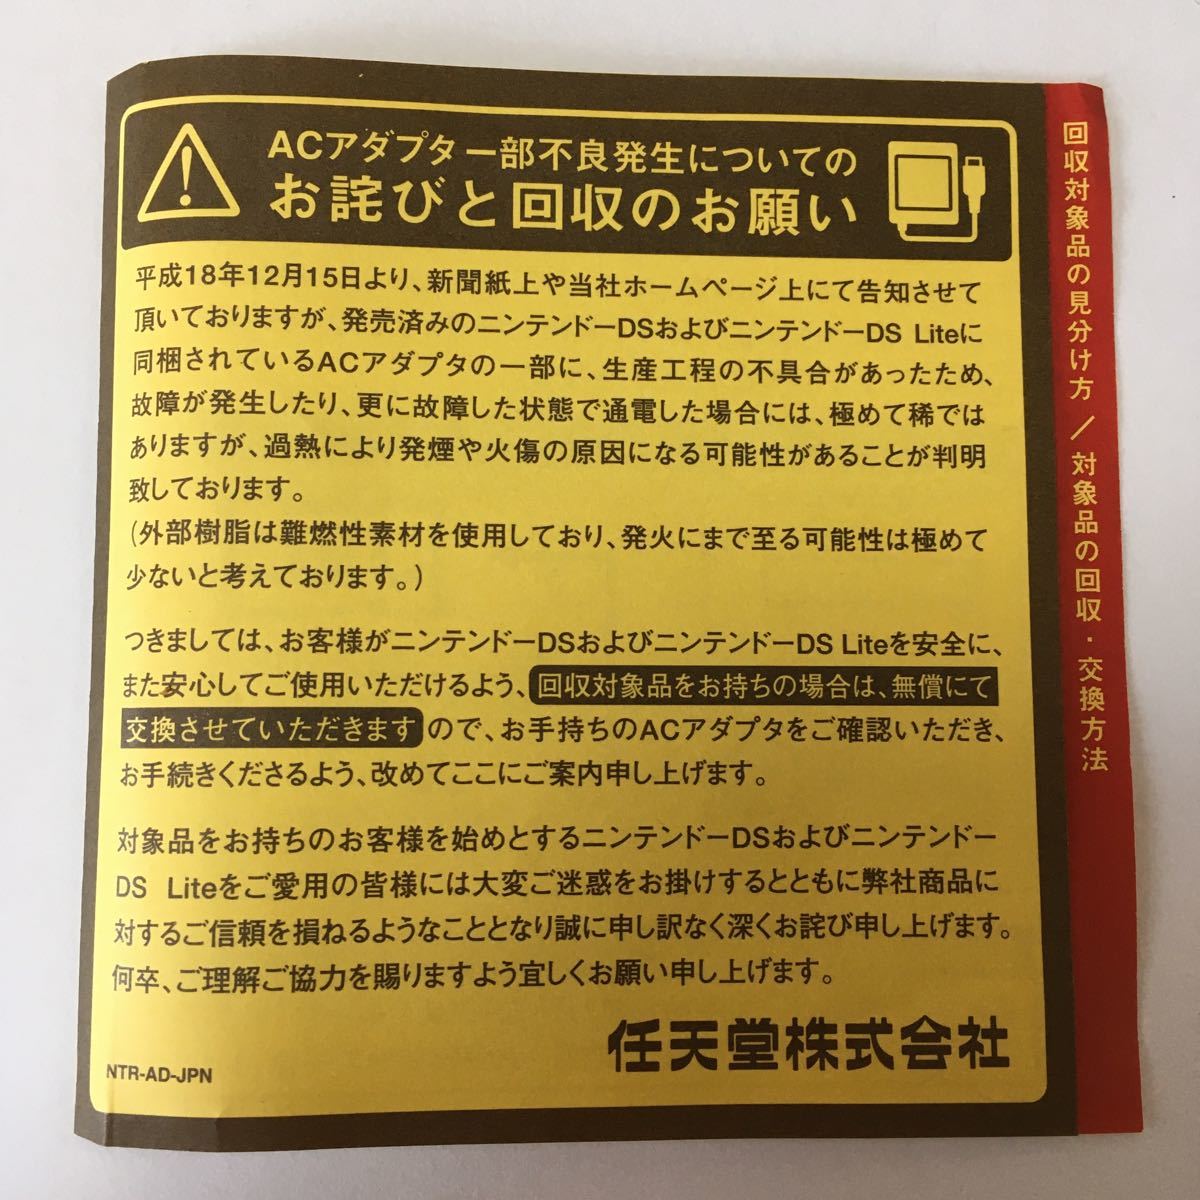 ニンテンドーDS  ソフト ニンテンドッグス　柴　フレンズ　犬　ペット　カセット　ゲーム　任天堂　